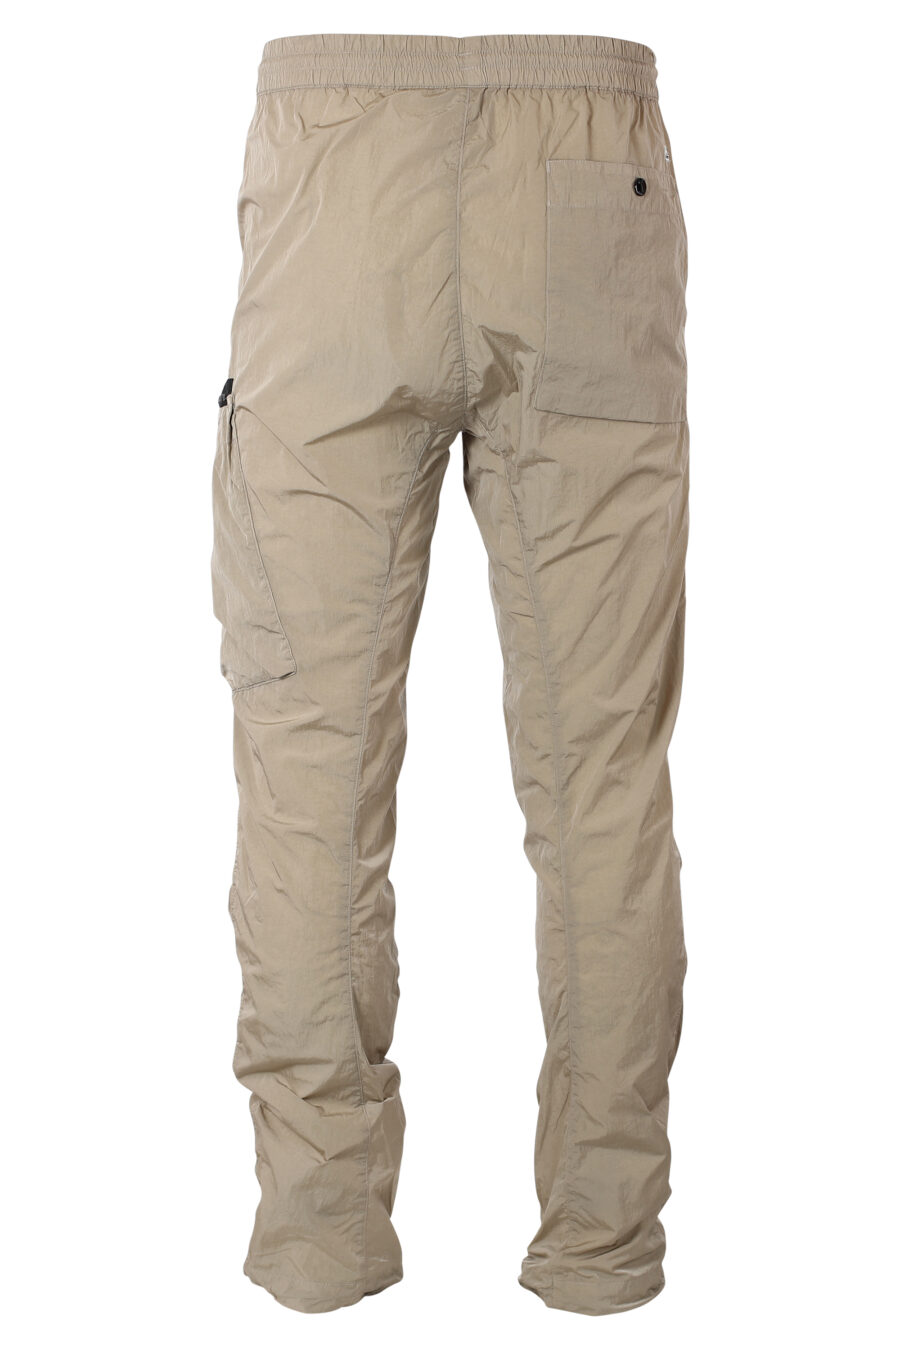 Pantalón beige con bolsillo lateral diagonal y minilogo circular - IMG 9938